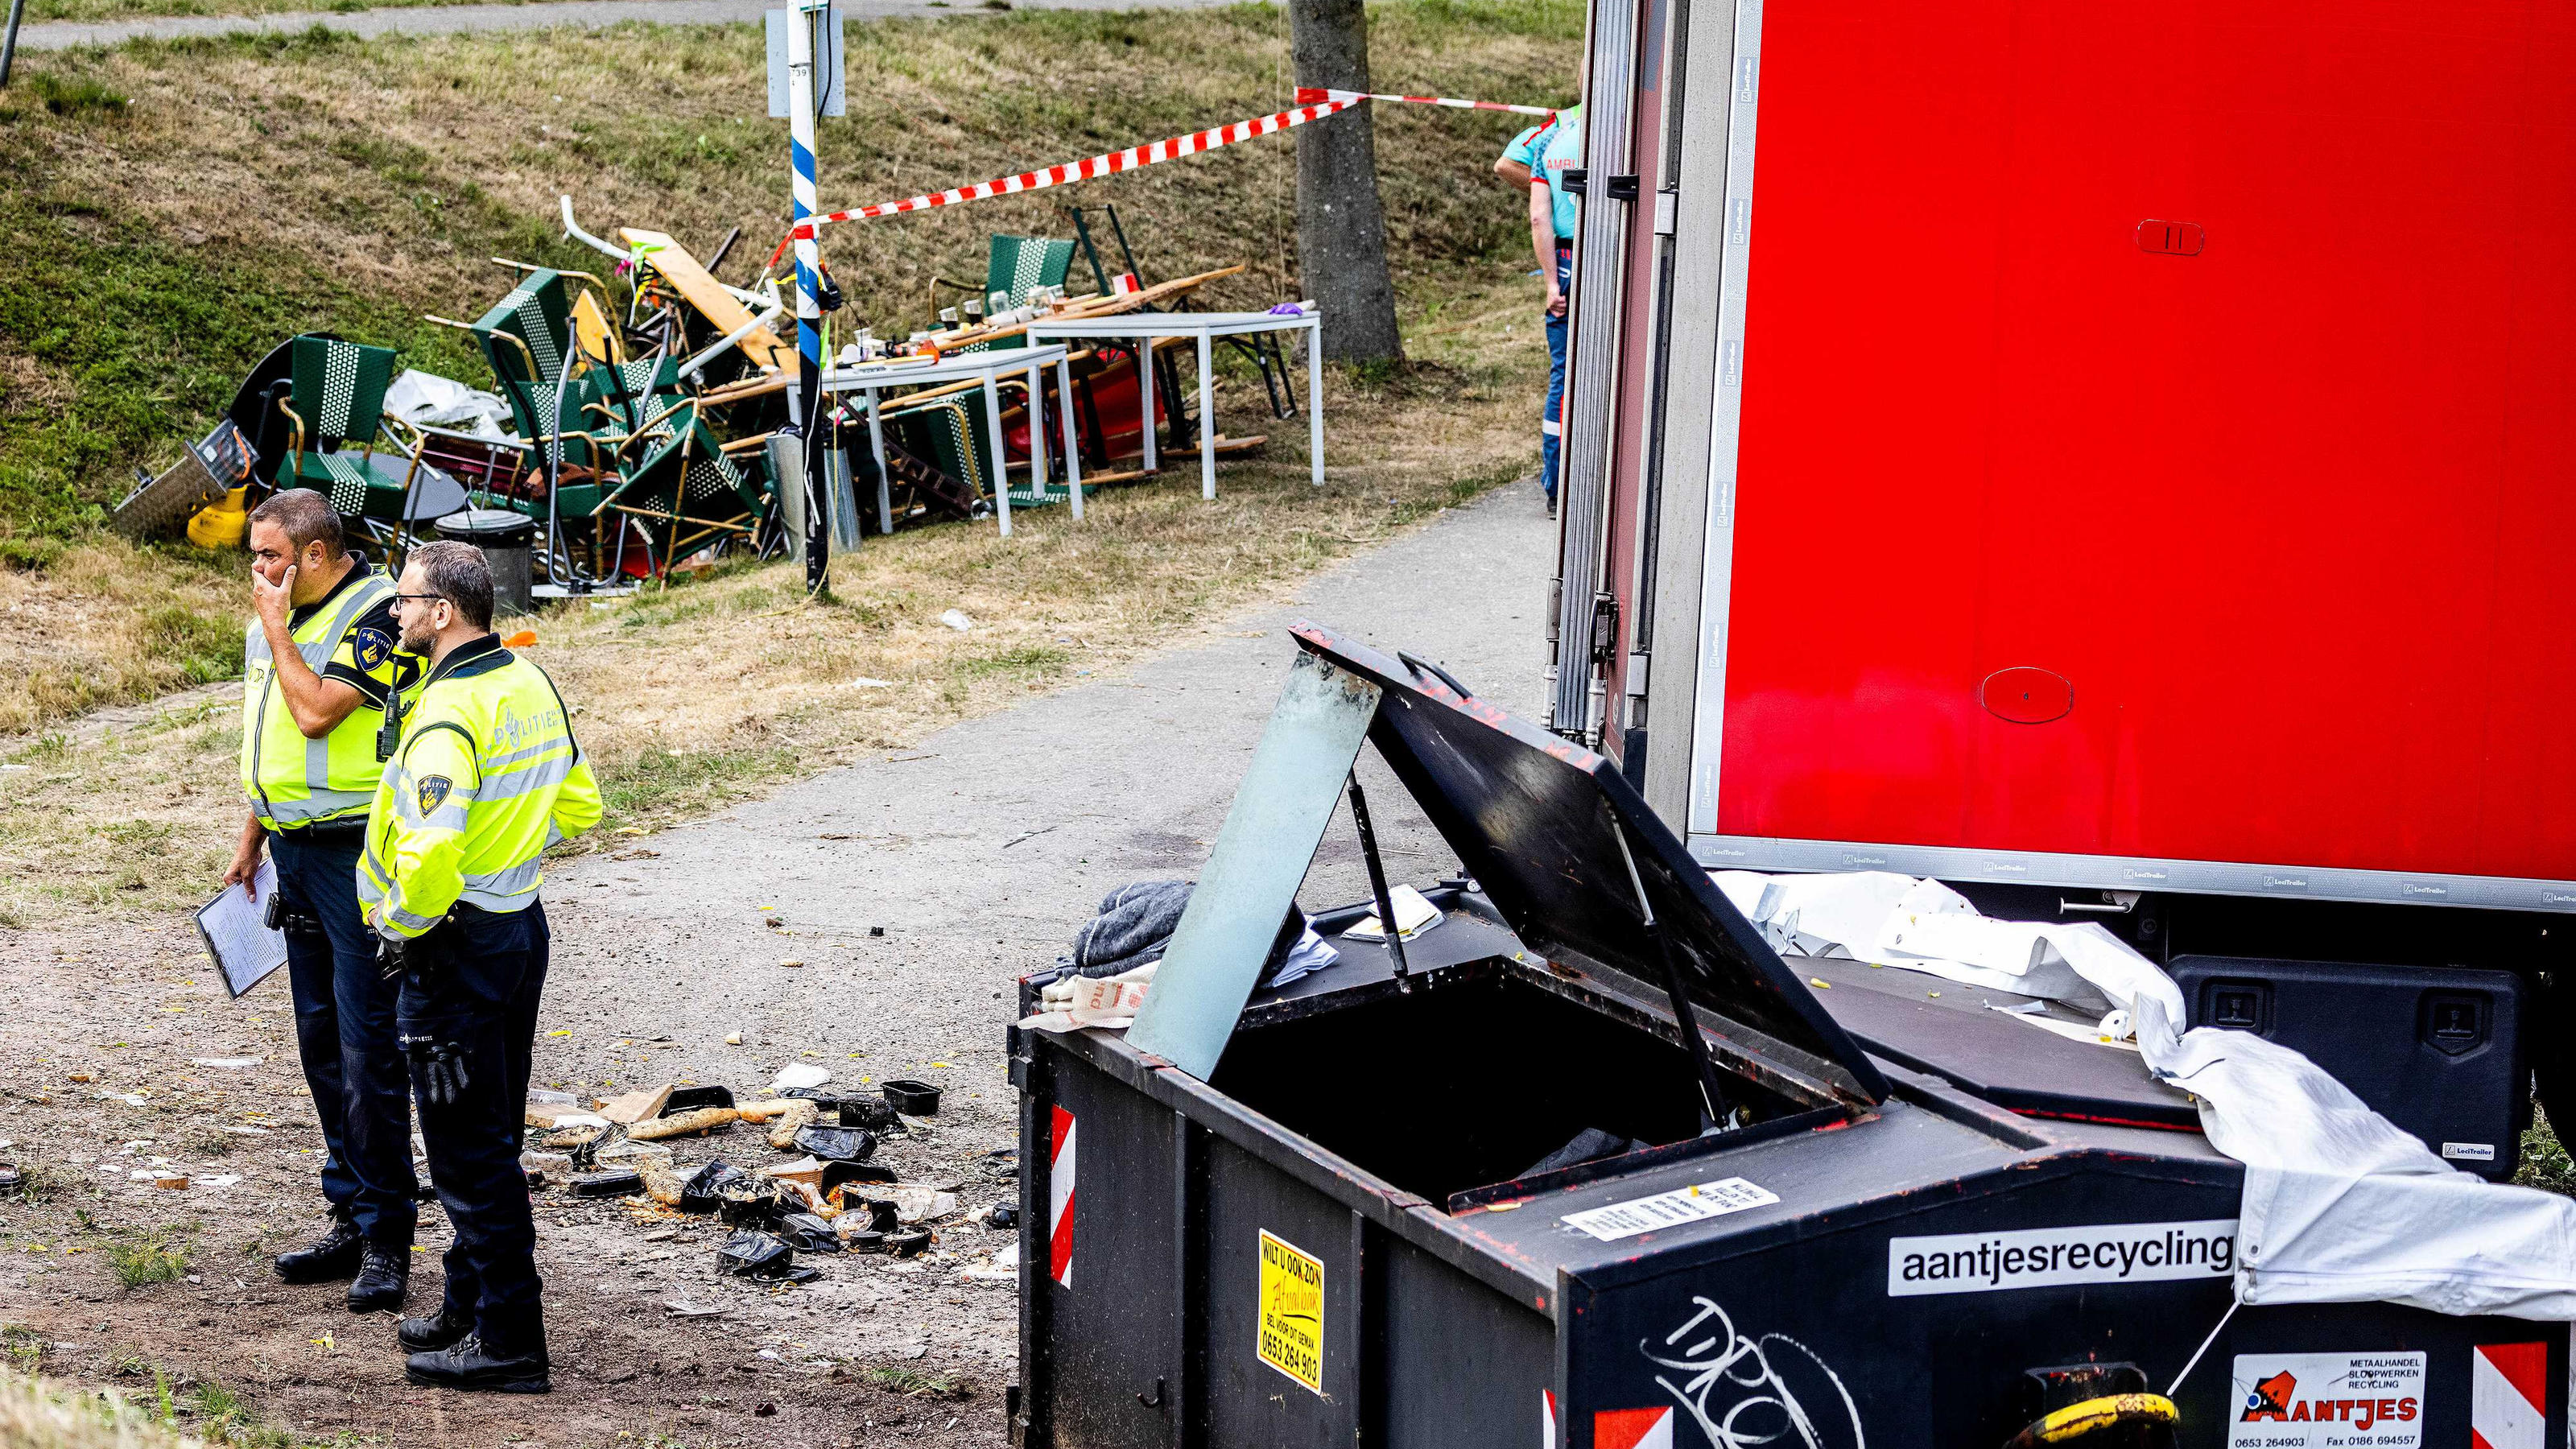 2022-08-27 19:23:14 NEW BEIJERLAND - Rettungsdienste am Unfallort. Ein Lastwagen ist im südholländischen Nieuw-Beijerland vom Deich abgekommen und hat laut Polizei mehrere Menschen verletzt. AP